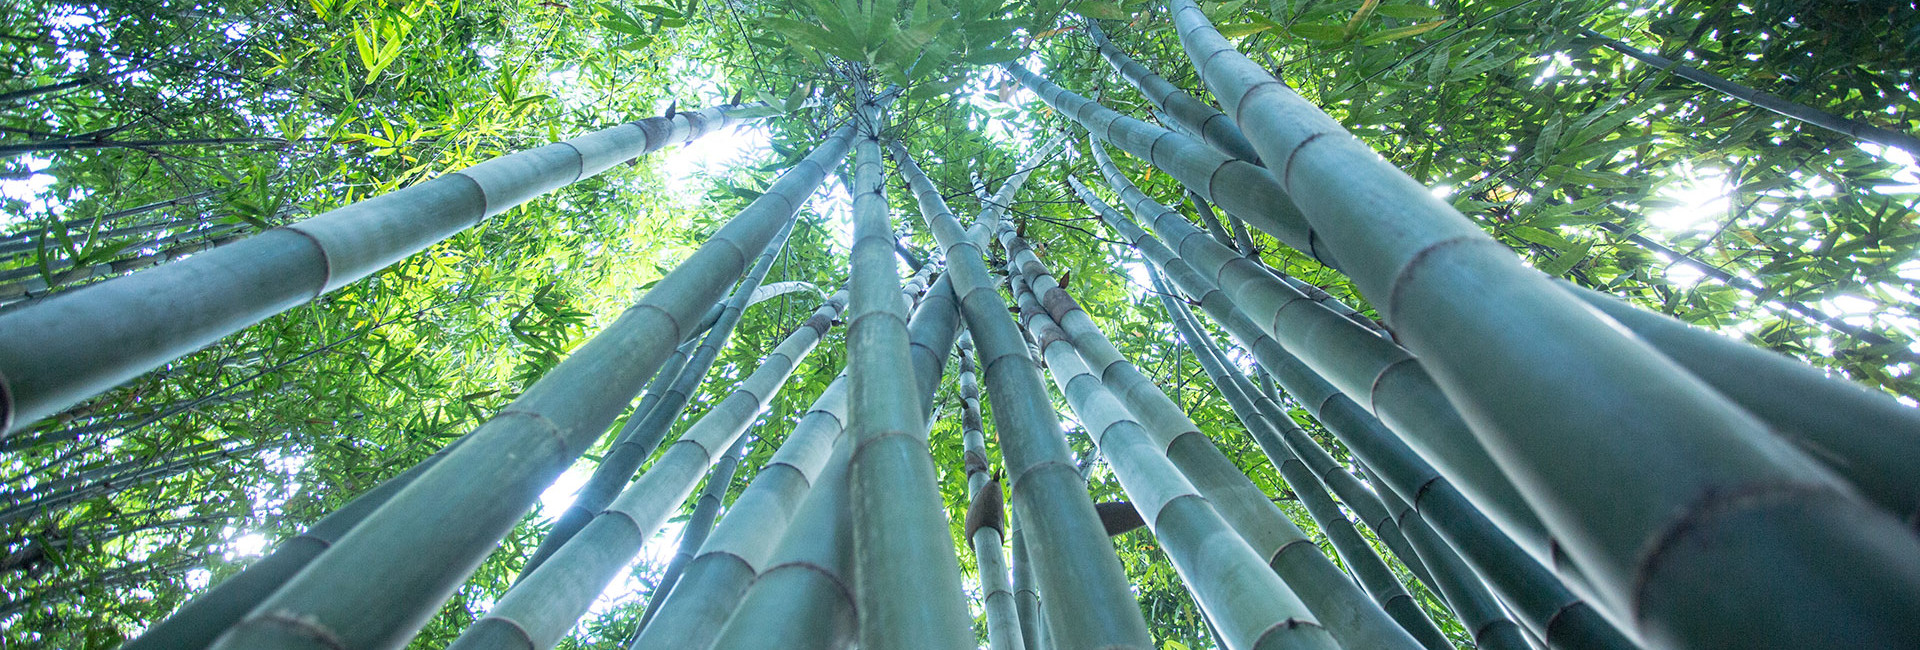 bambus eksperter